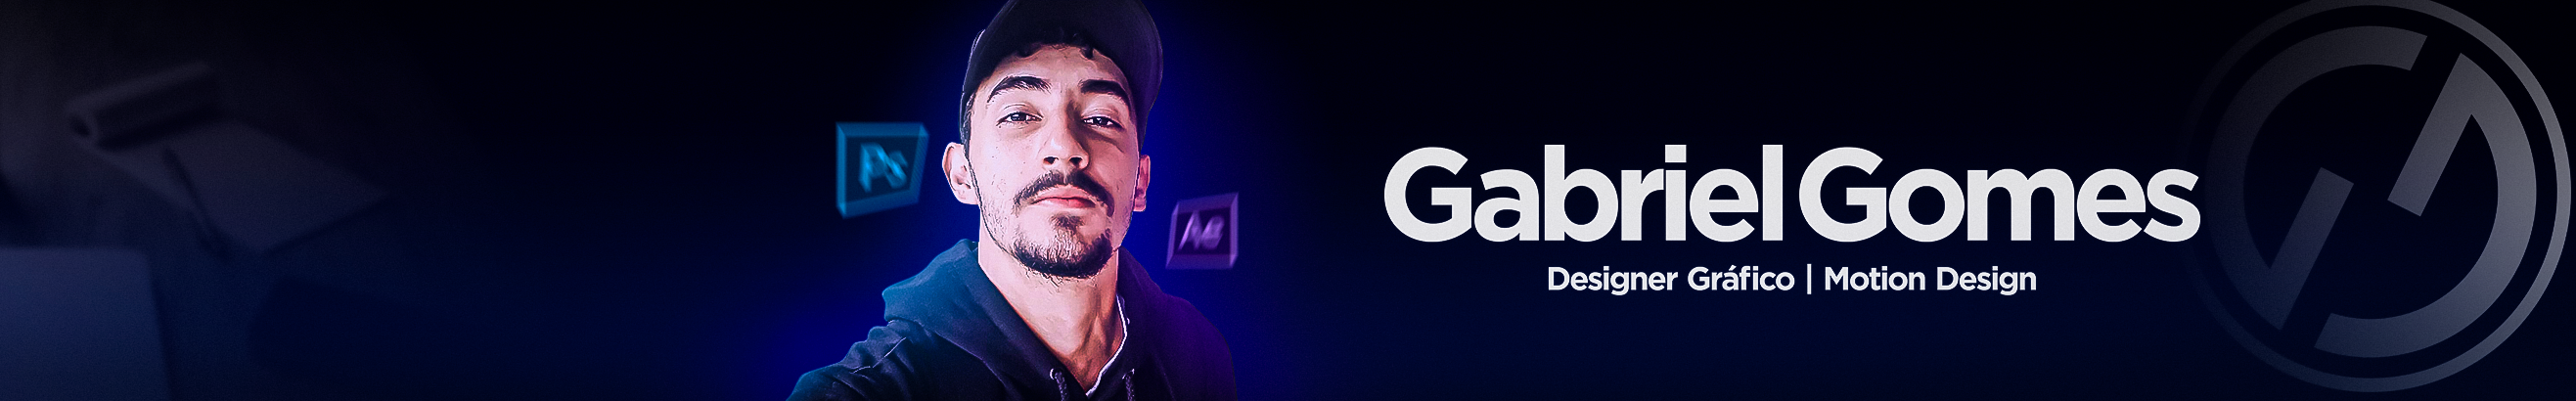 Gabriel Gomes's profile banner